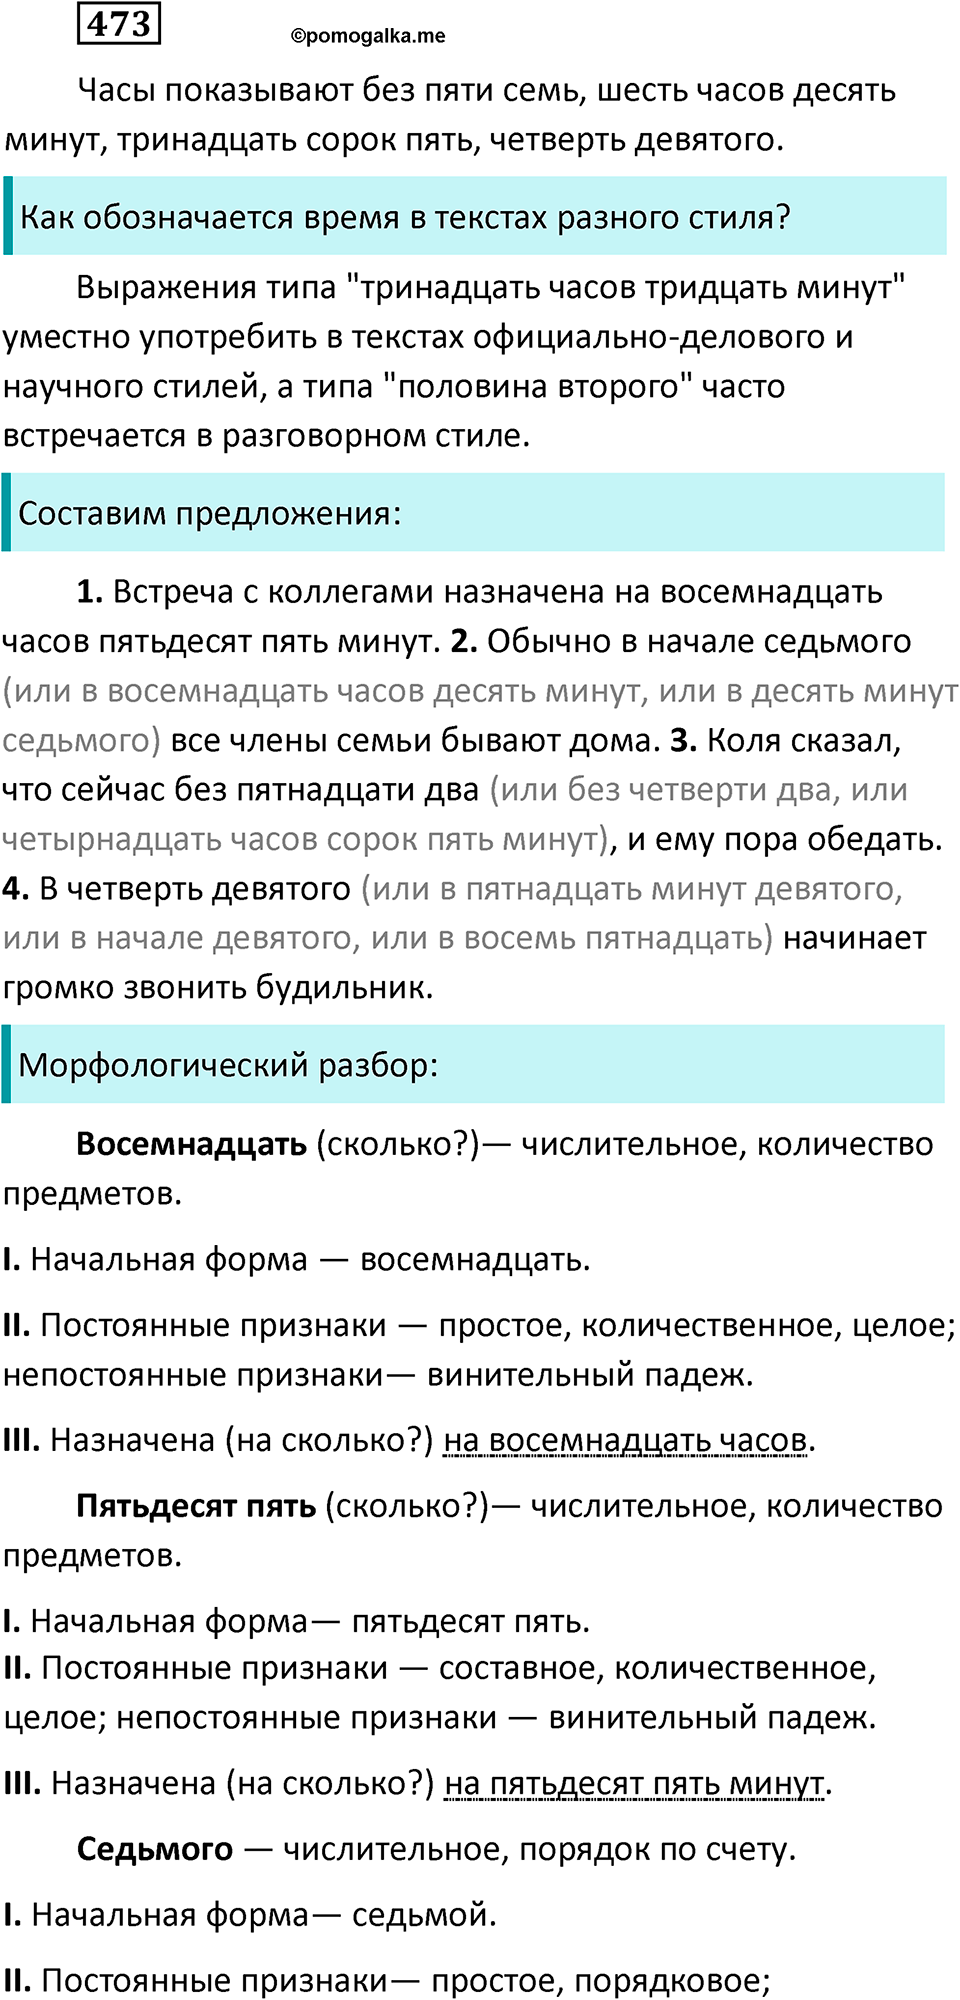 разбор упражнения №473 русский язык 6 класс Баранов, Ладыженская, Тростенцова 2020 год